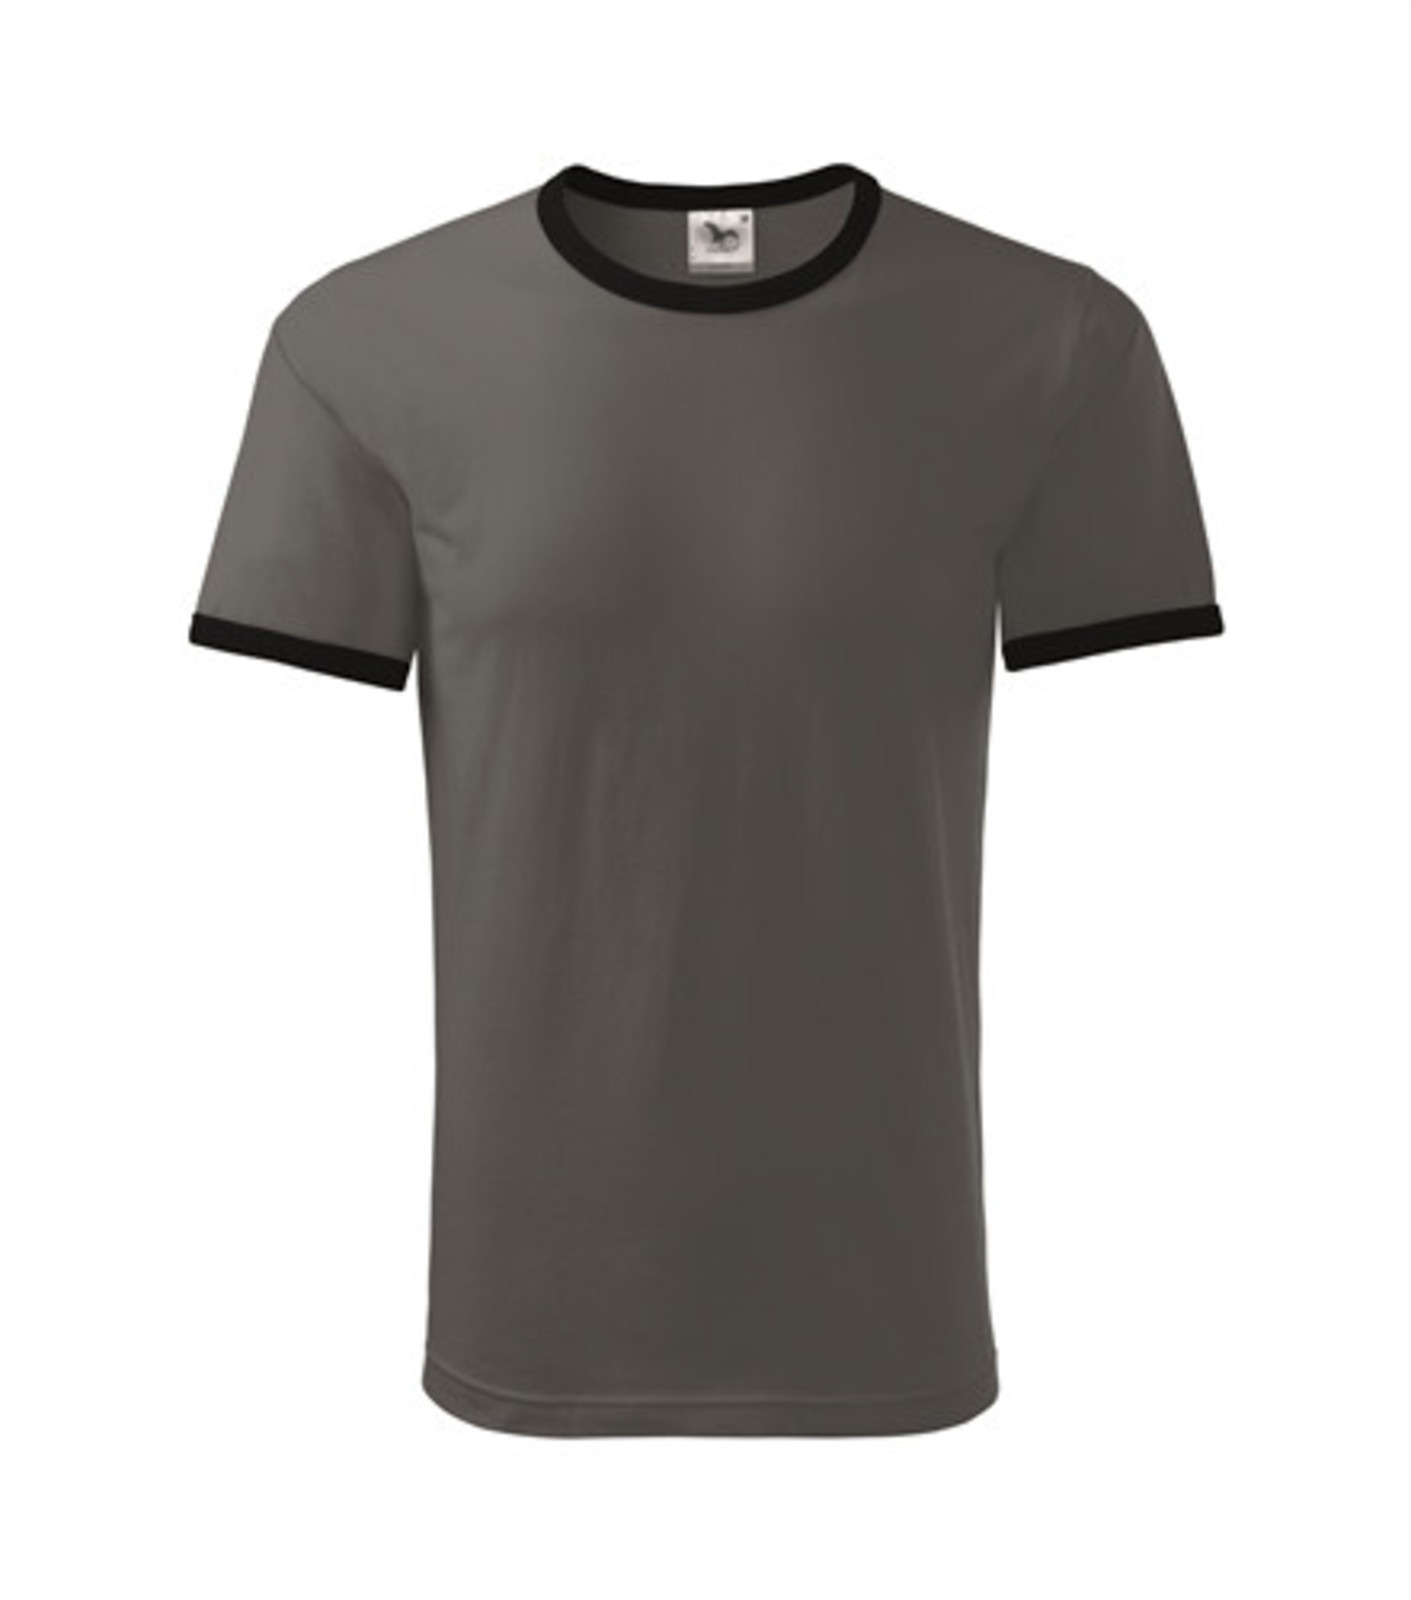 Unisex tričko Adler Infinity 131 - veľkosť: XL, farba: bridlica/čierna